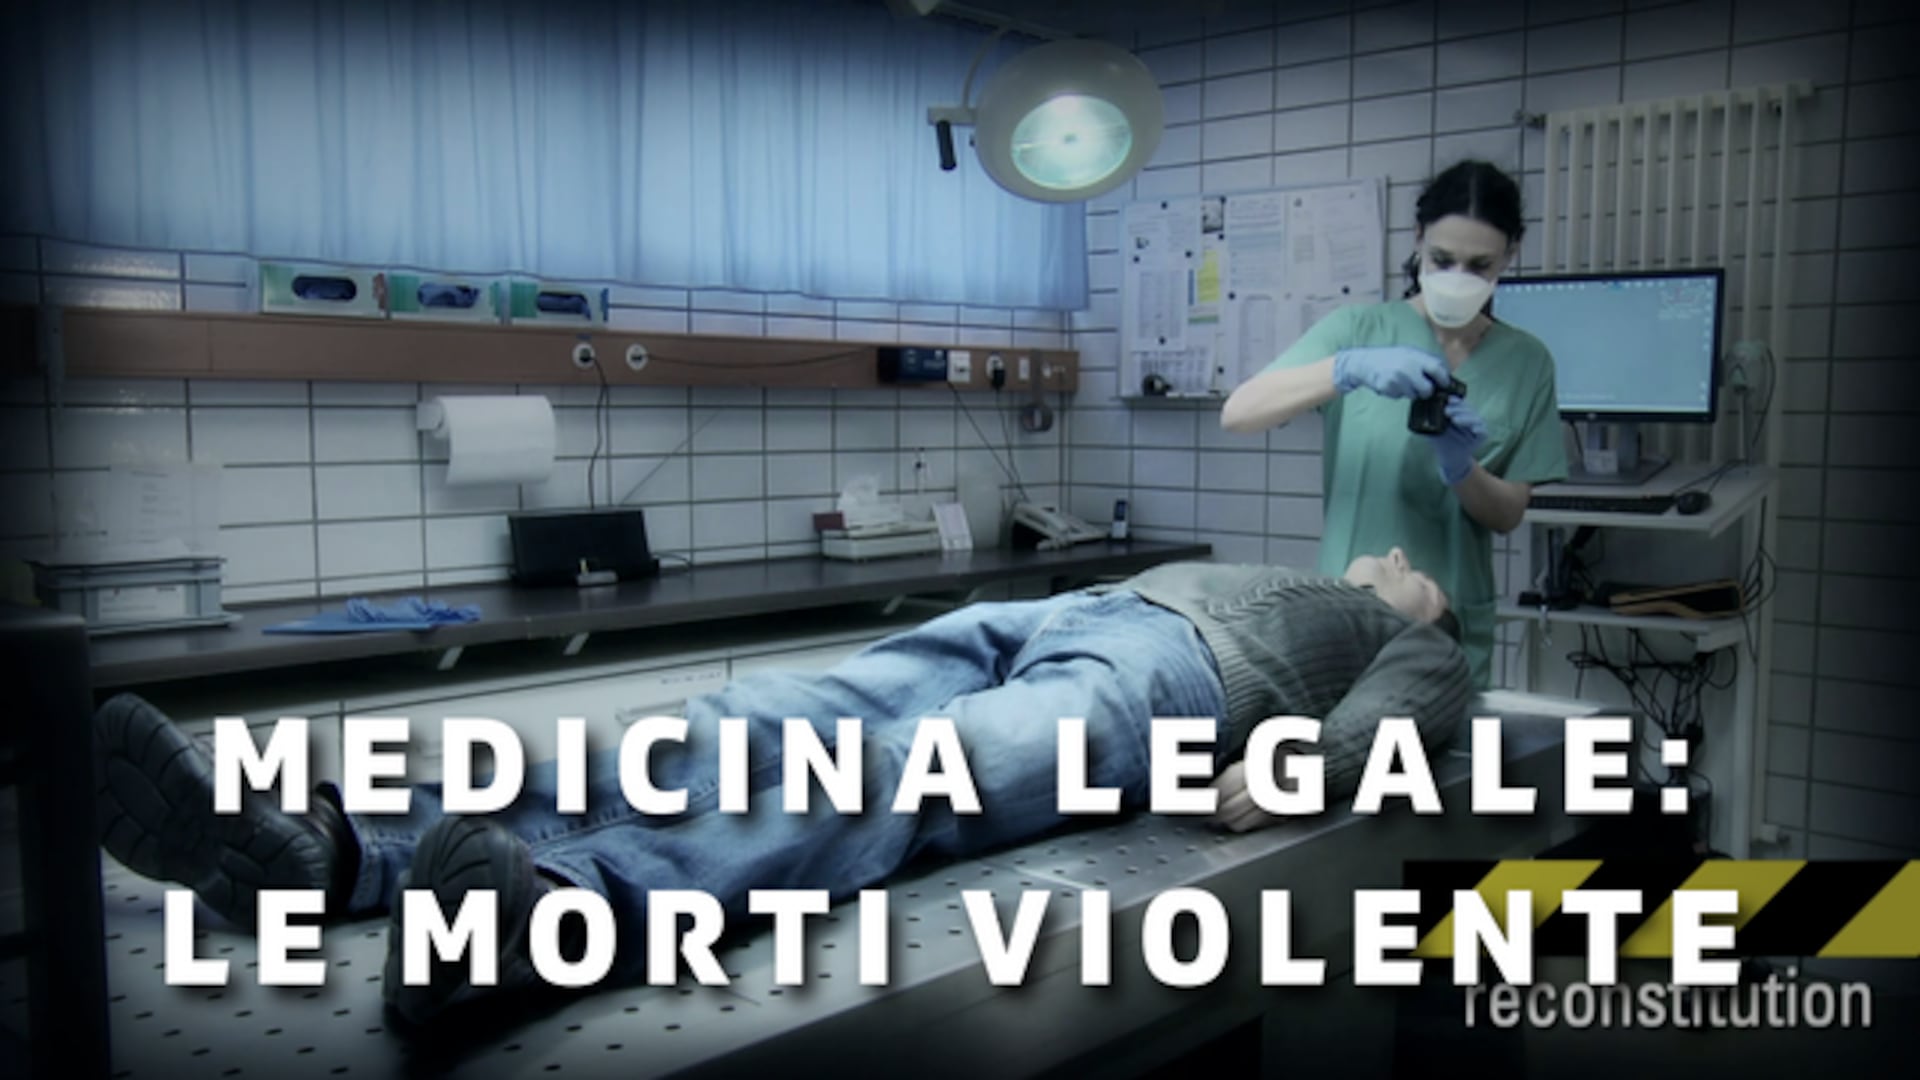 Medicina legale: le morti violente